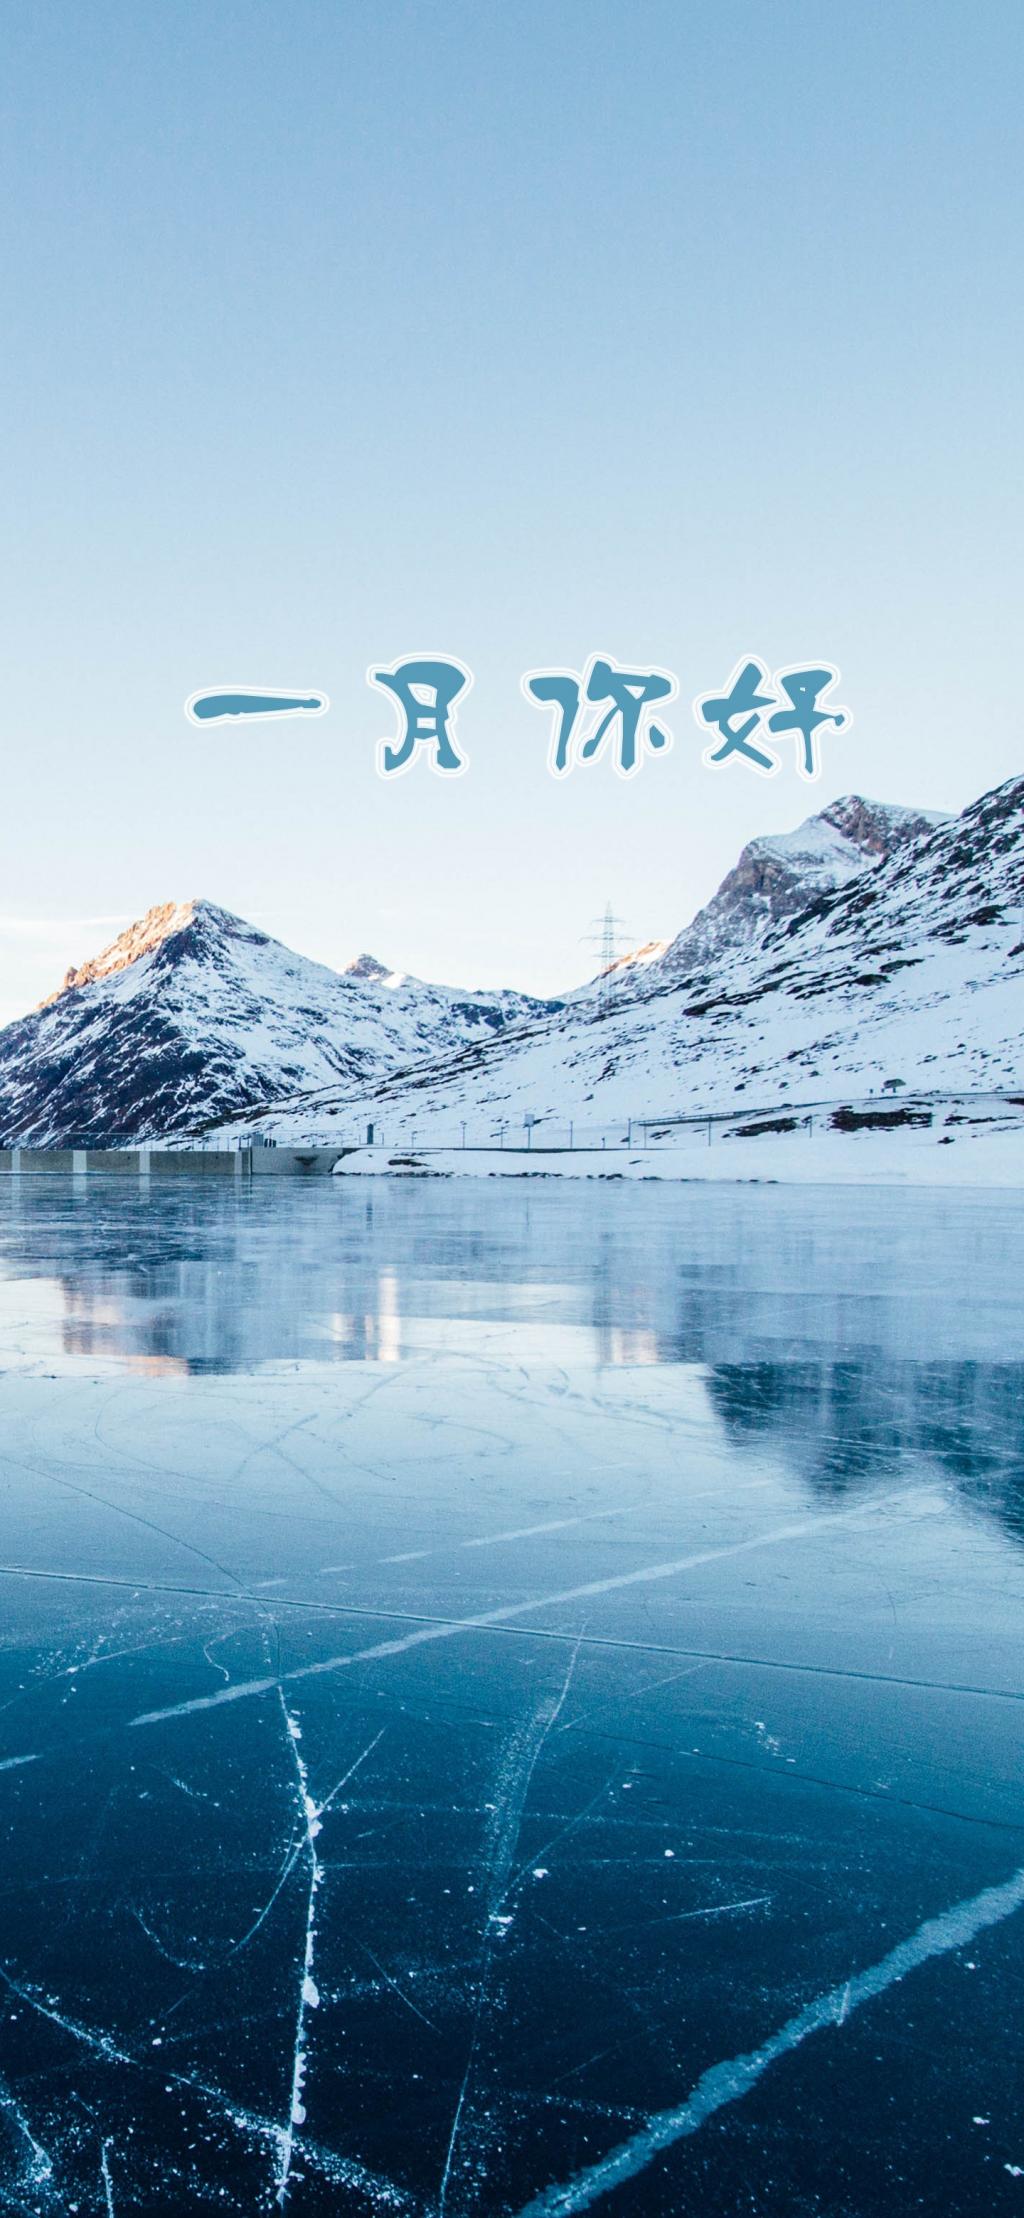 1月里釣り湖の風景の壁紙 ロック画面の画像 Hdの携帯電話の壁紙 風景の中にこんにちは美しい雪をかぶった山々 壁紙